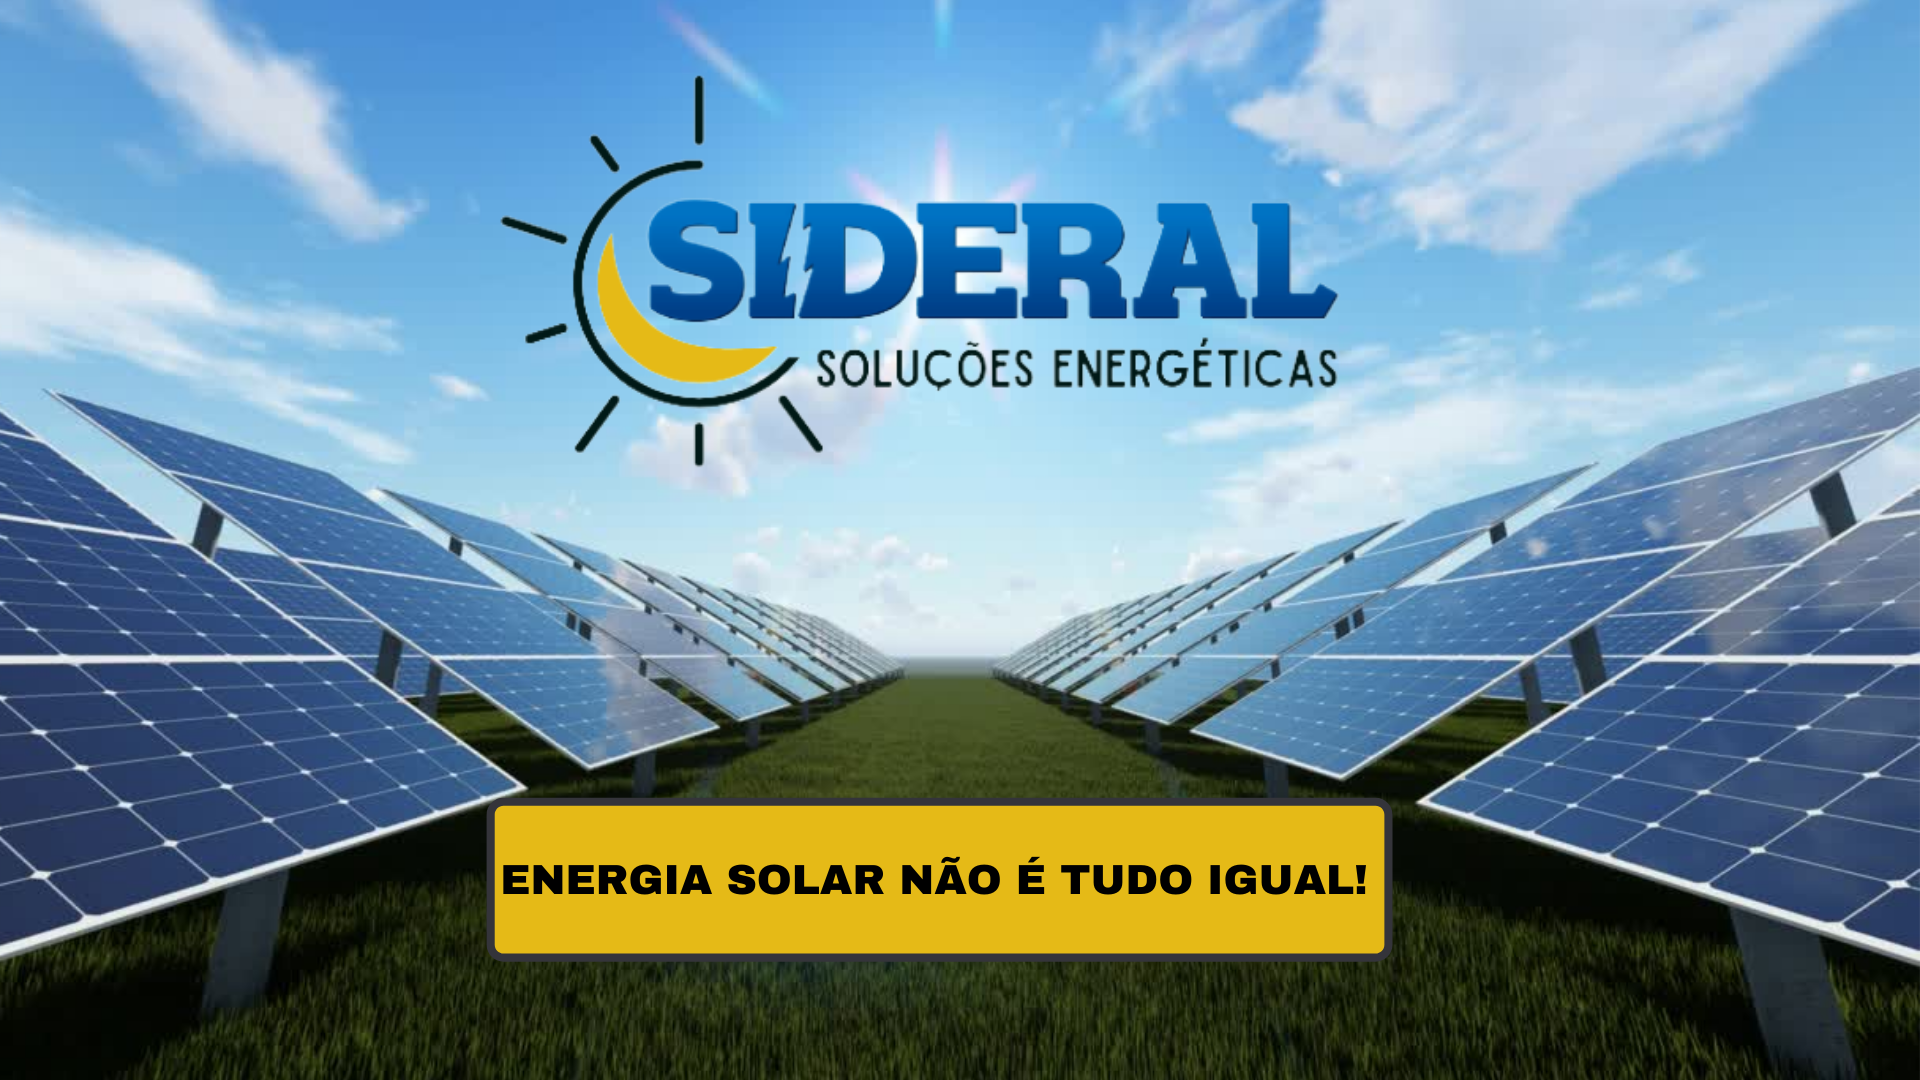 Cópia de ENERGIA SOLAR NÃO É TUDO IGUALr (Papel de parede)